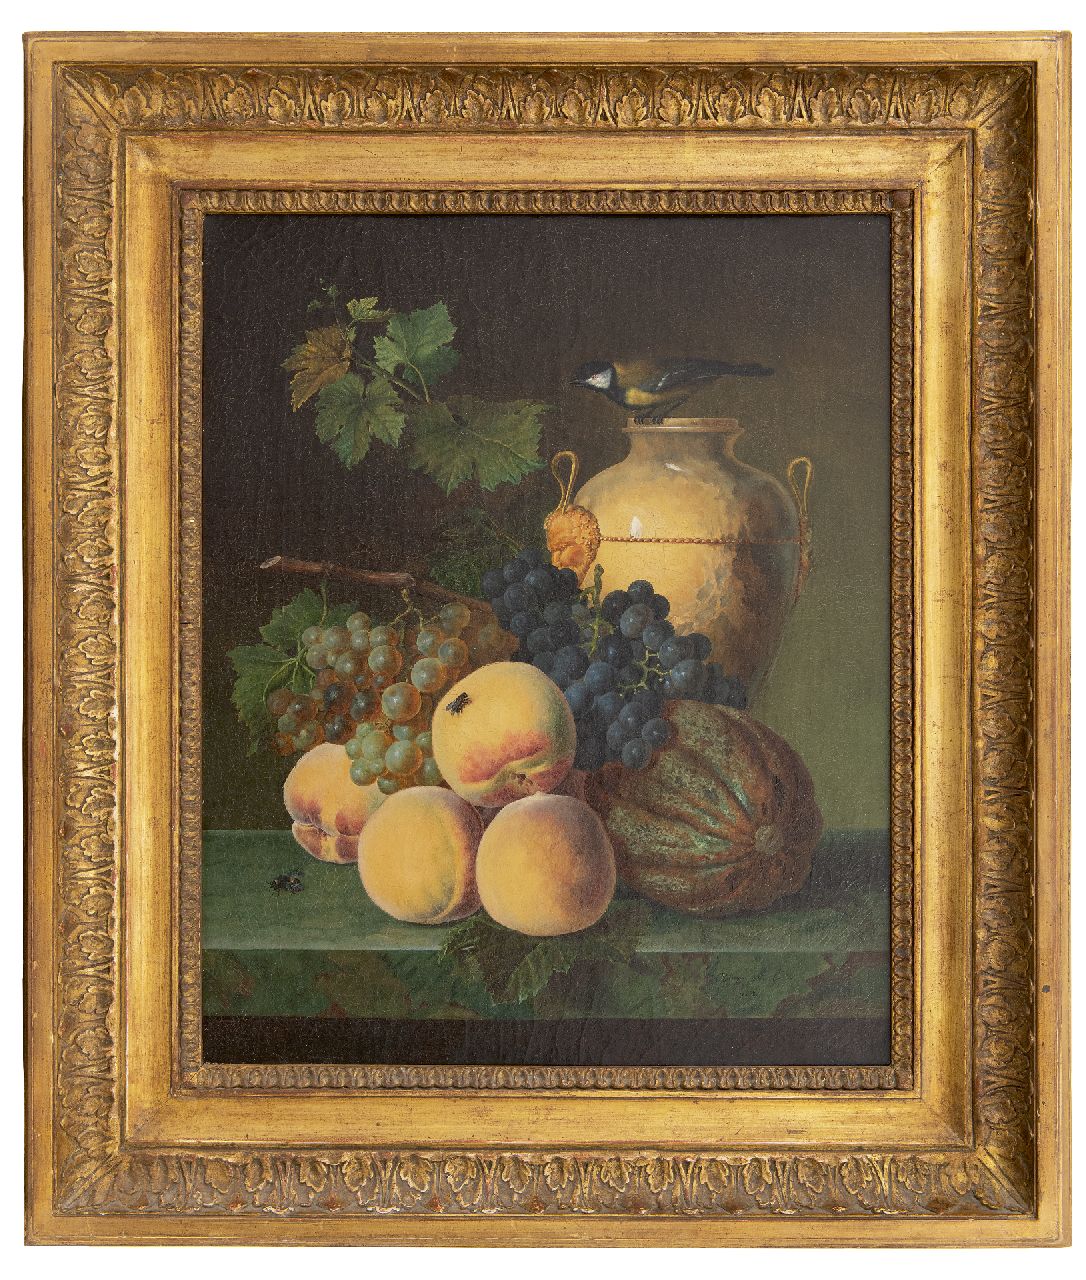 Génin O.M.  | Olympe Mouette Génin | Schilderijen te koop aangeboden | Stilleven met perziken, kruik en vogeltje, olieverf op doek 49,0 x 39,9 cm, gesigneerd rechtsonder en gedateerd 1818